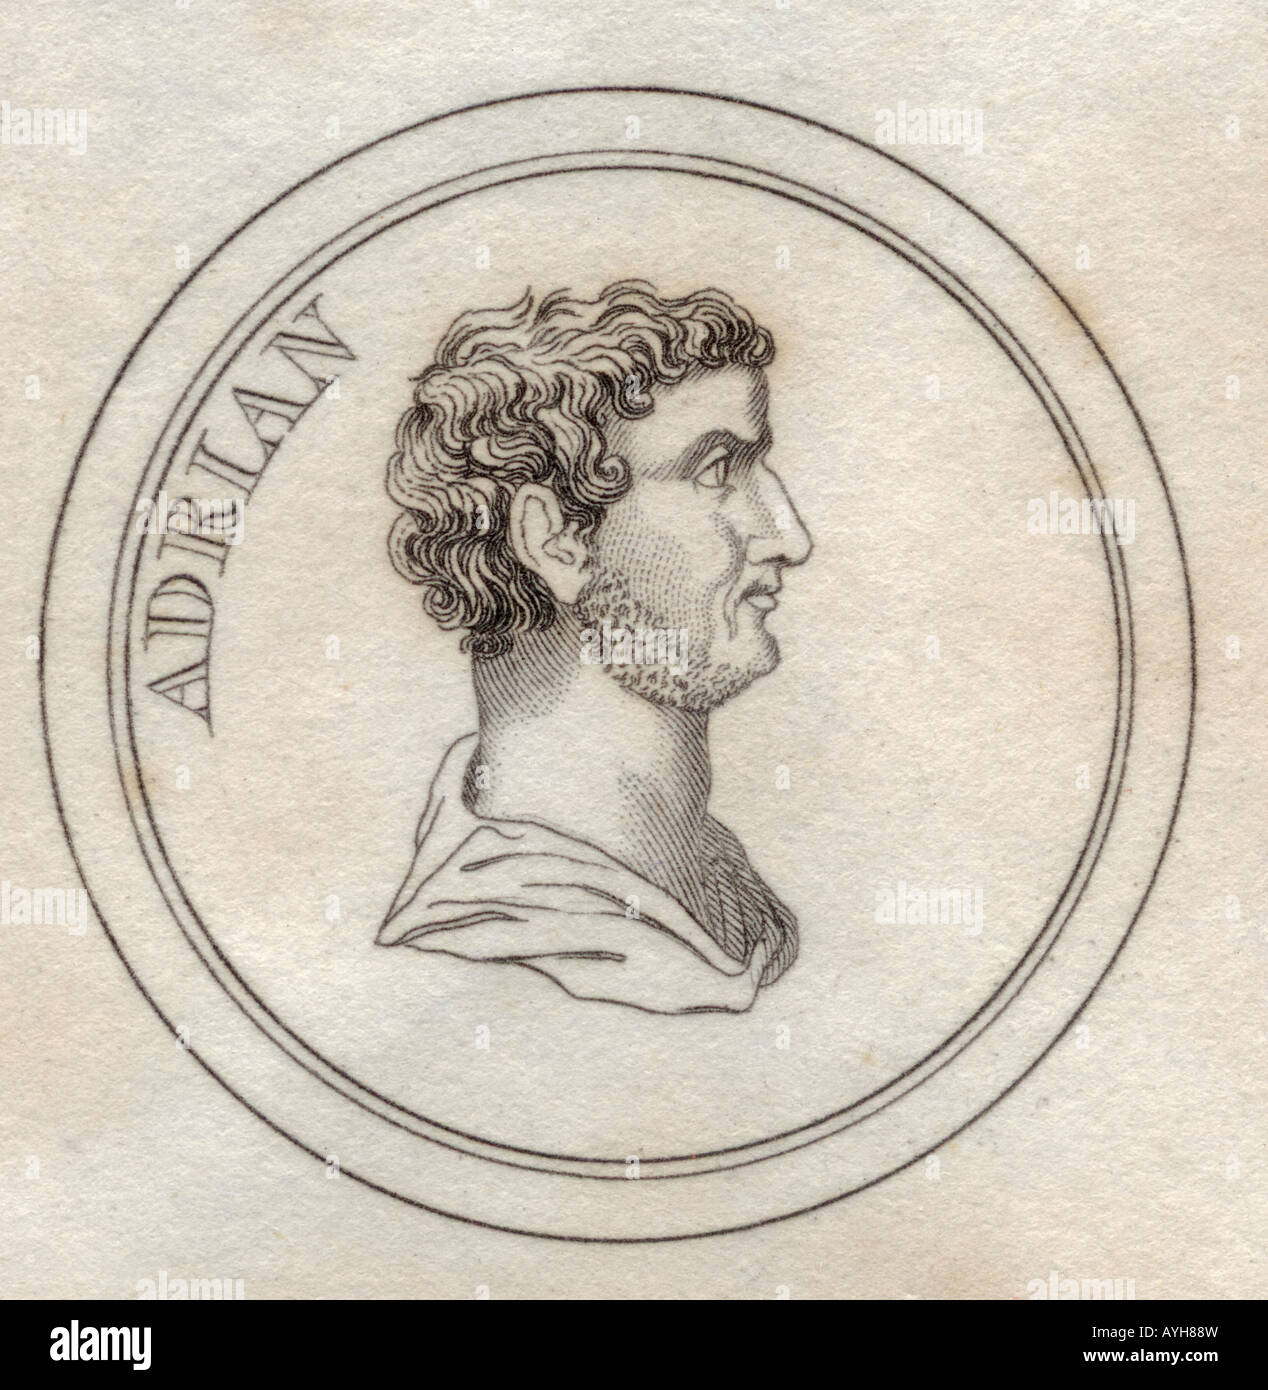 Publius Aelius Traianus Hadrianus, BC76 - BC138. Emperador romano también conocido como Adriano. Filósofo estoico y epicúreo. Foto de stock